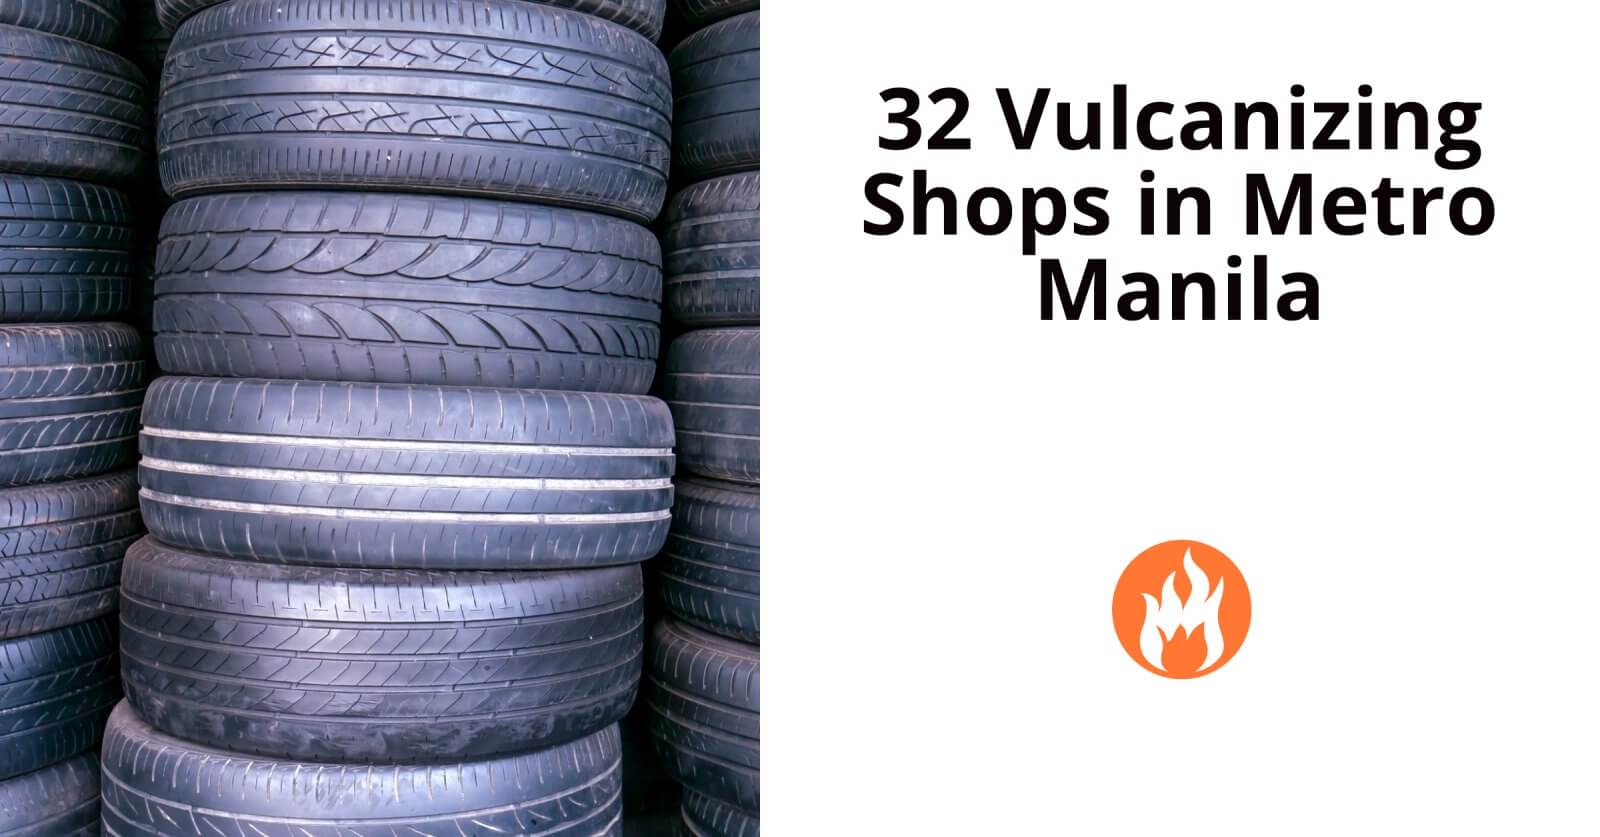 32 vulcanizing shops in metro manila.